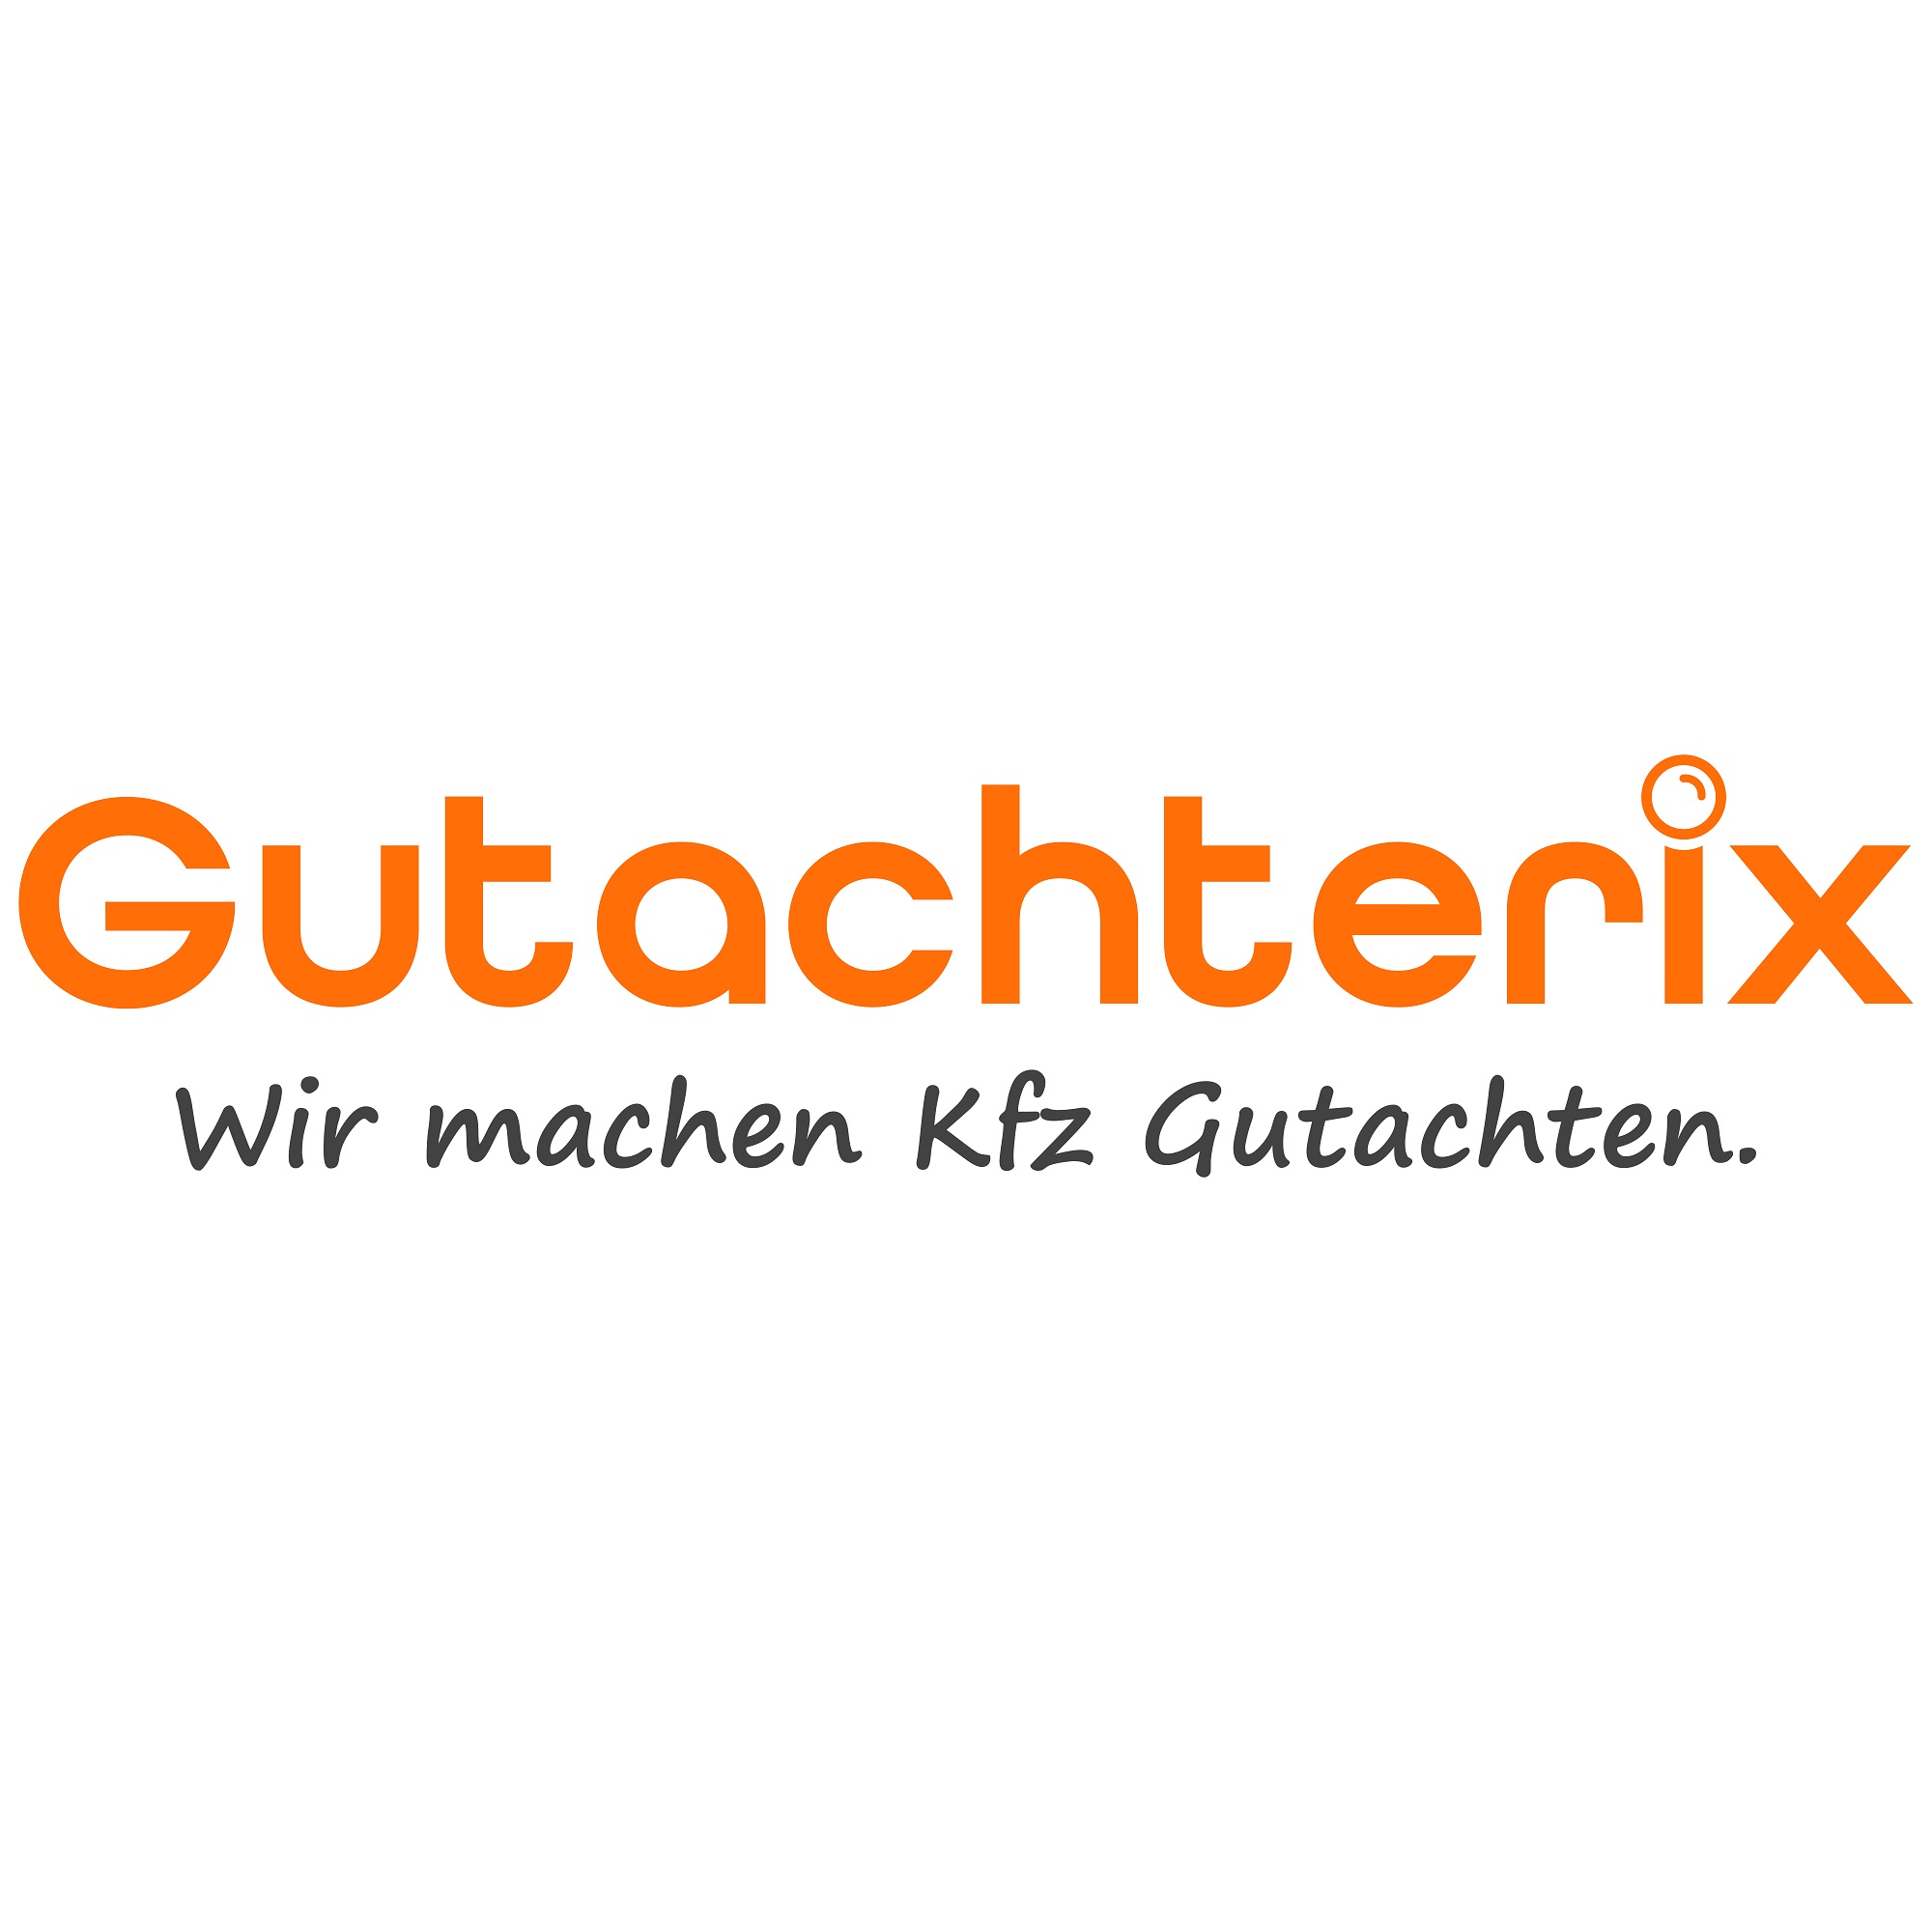 Gutachterix Augsburg, Kfz Gutachter & Sachverständiger in Augsburg